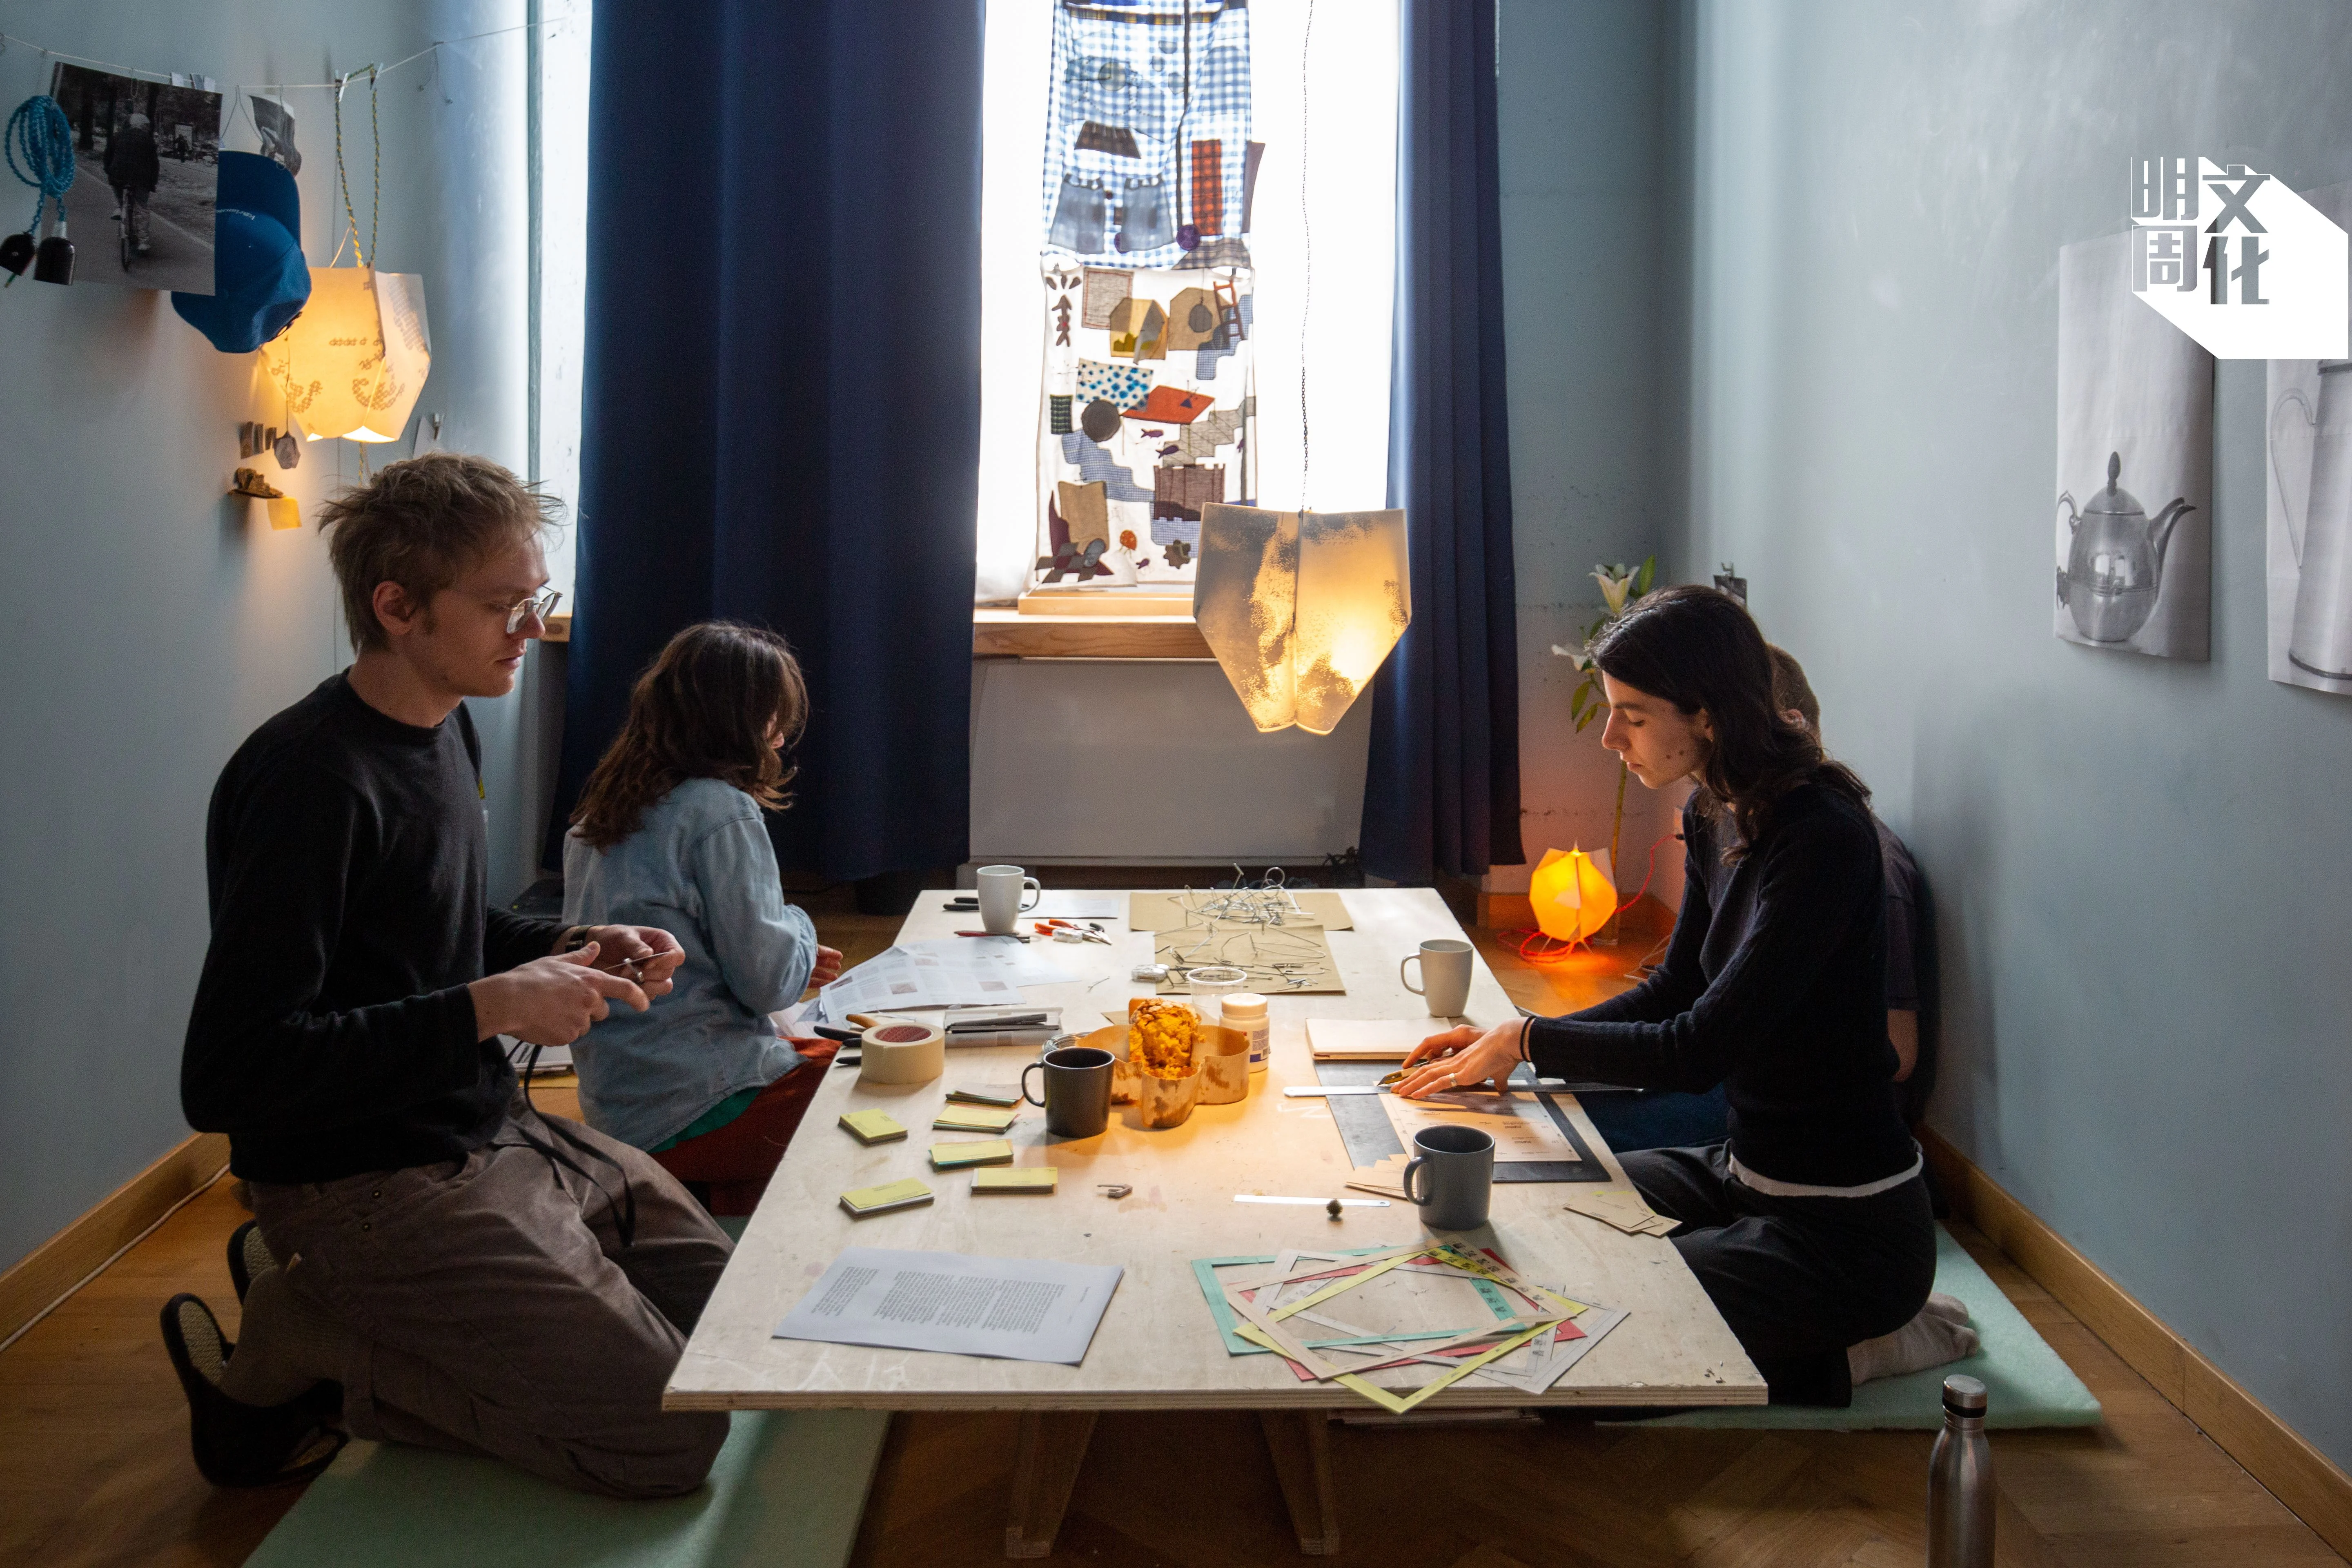 Montjoi Institut則在房間裏重構了一個居家空間，三位藝術家每天都在房裏進行不同日常活動。